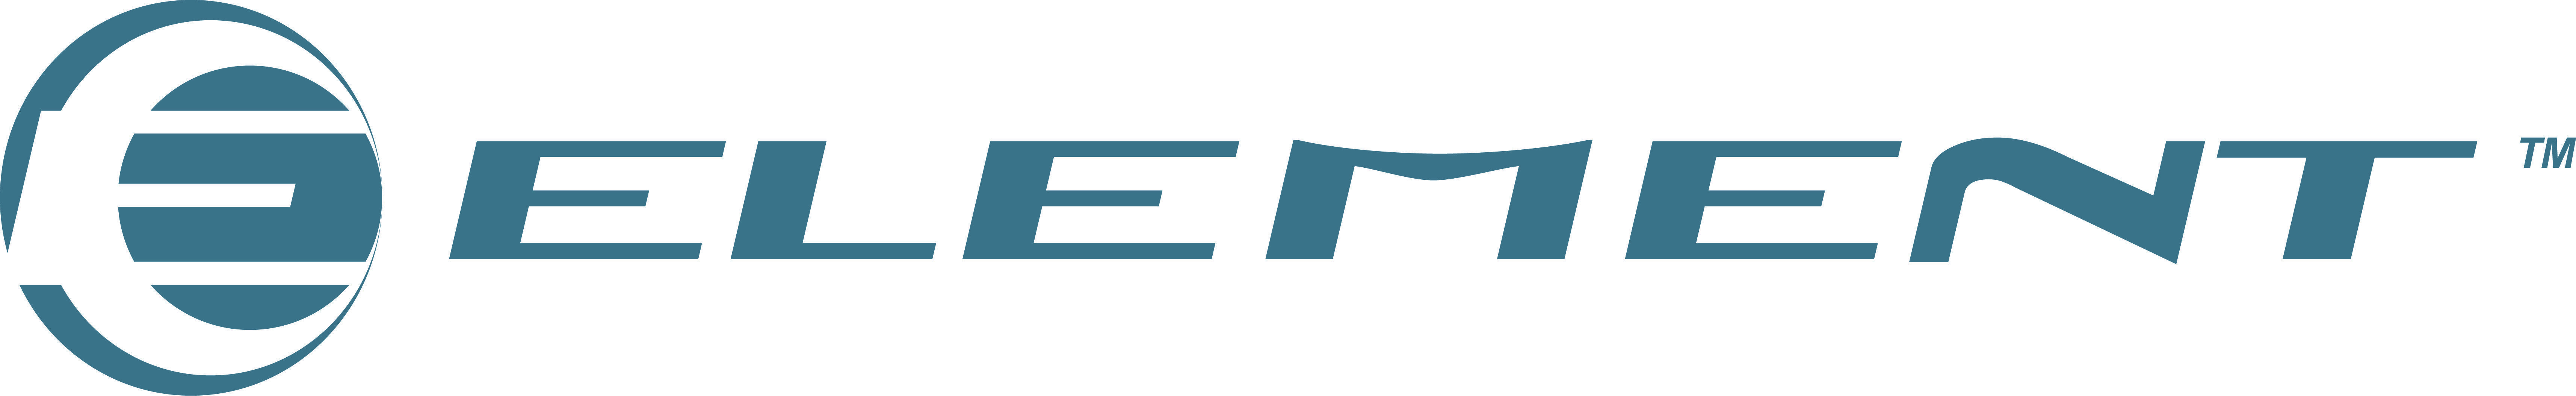 Element TV Logo - Pictures of Element Tv Logo - kidskunst.info